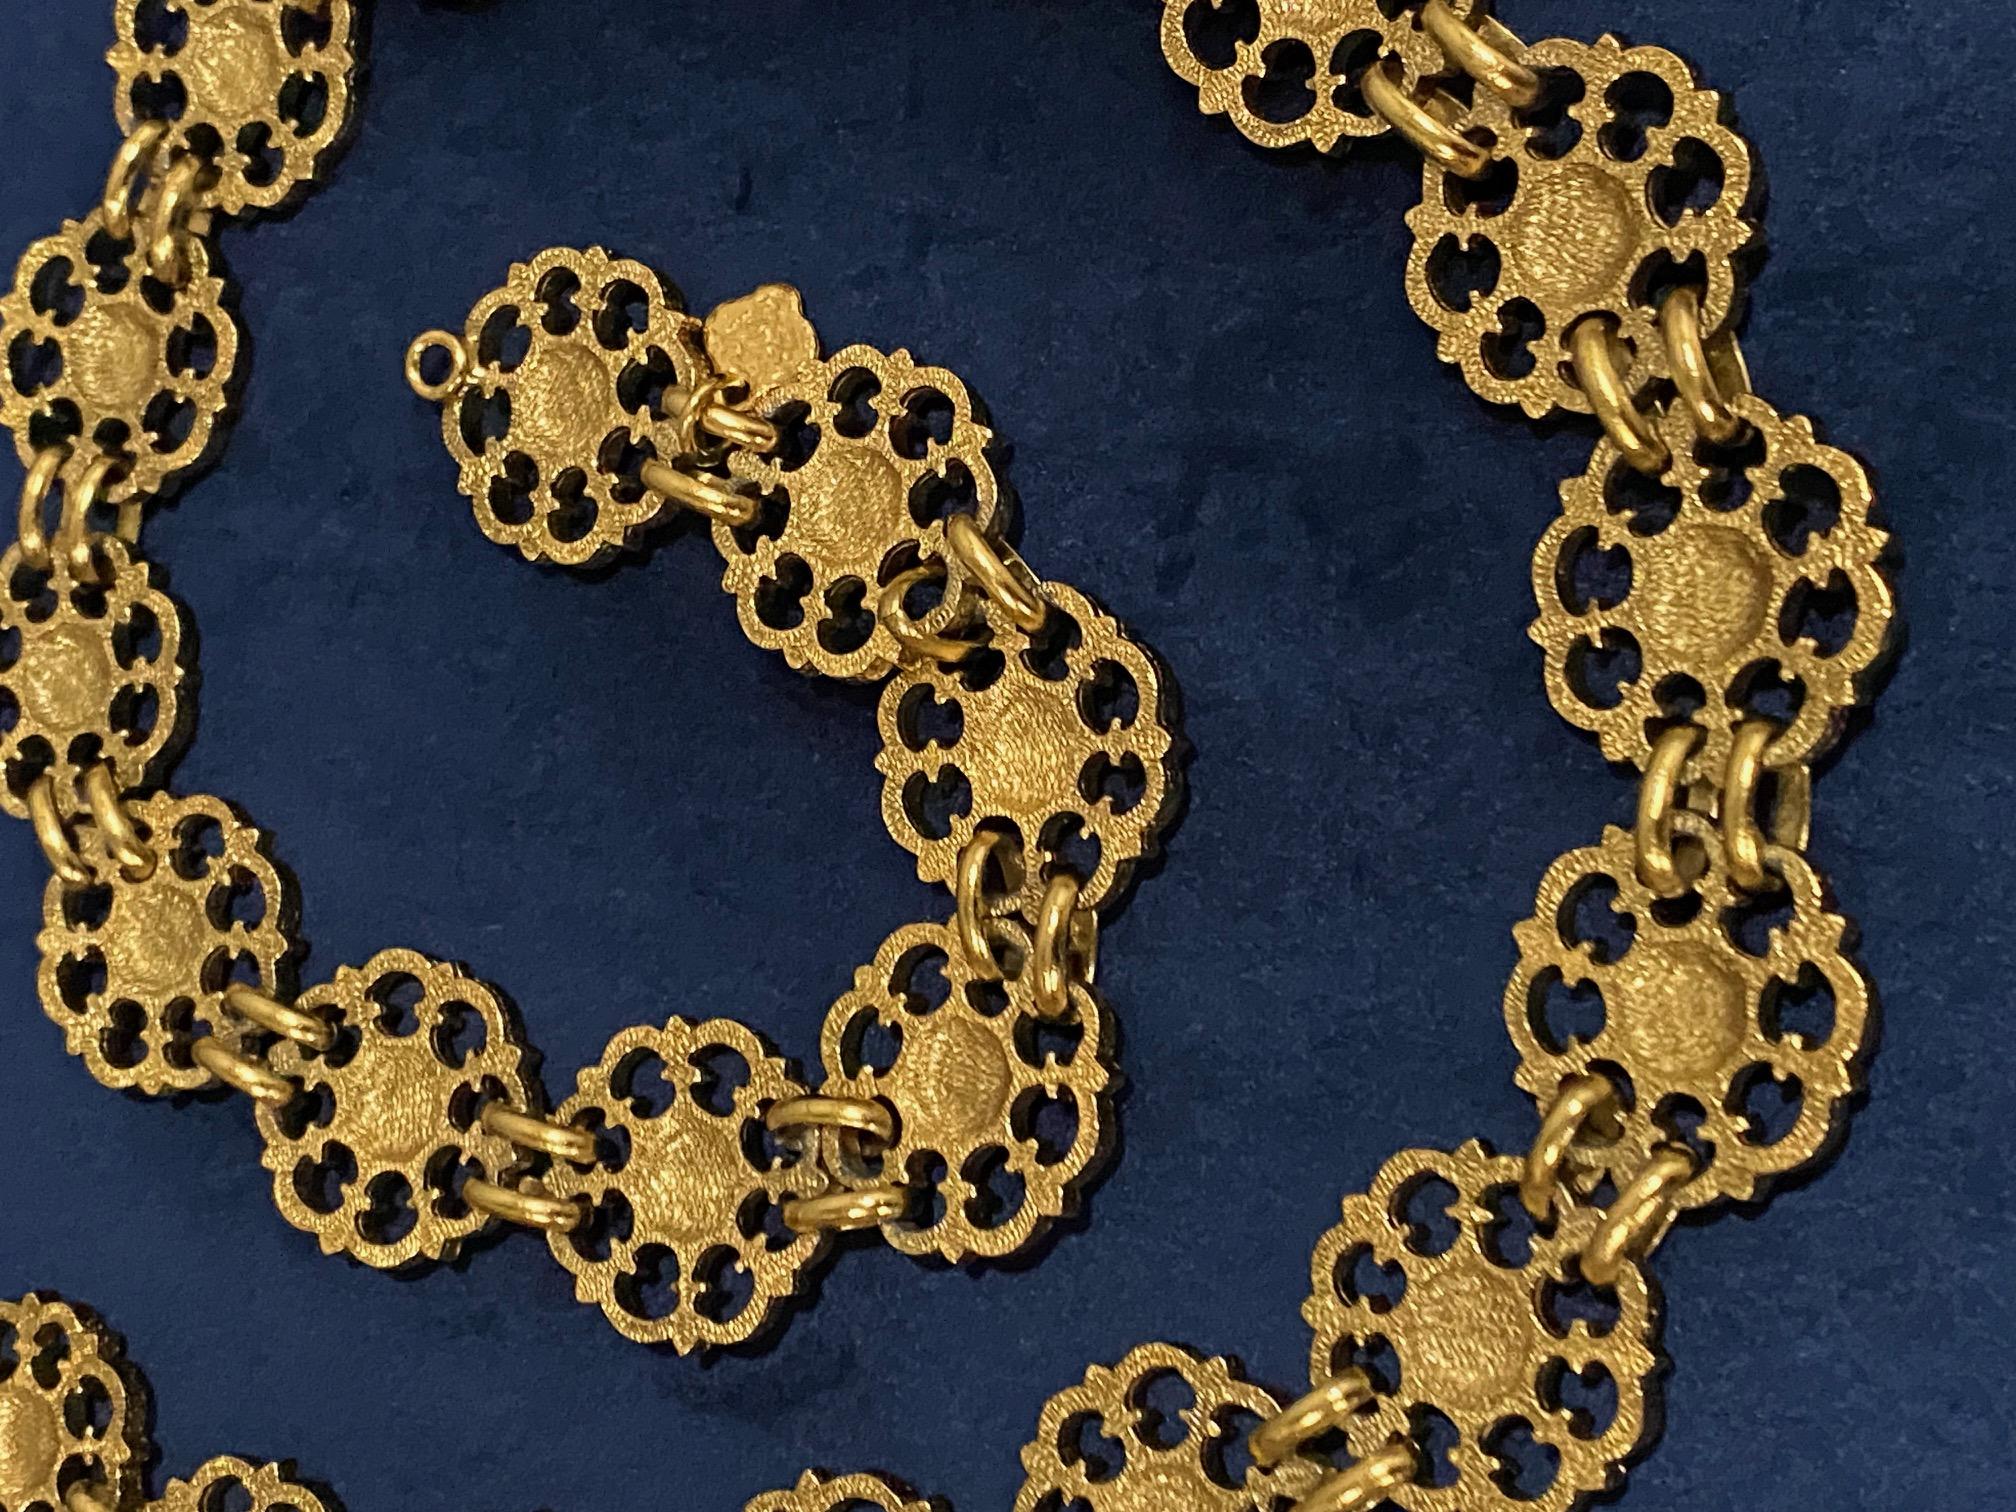 Yves Saint Laurent, Rive Gauche, 1980s Gold Belt / Necklace For Sale 2